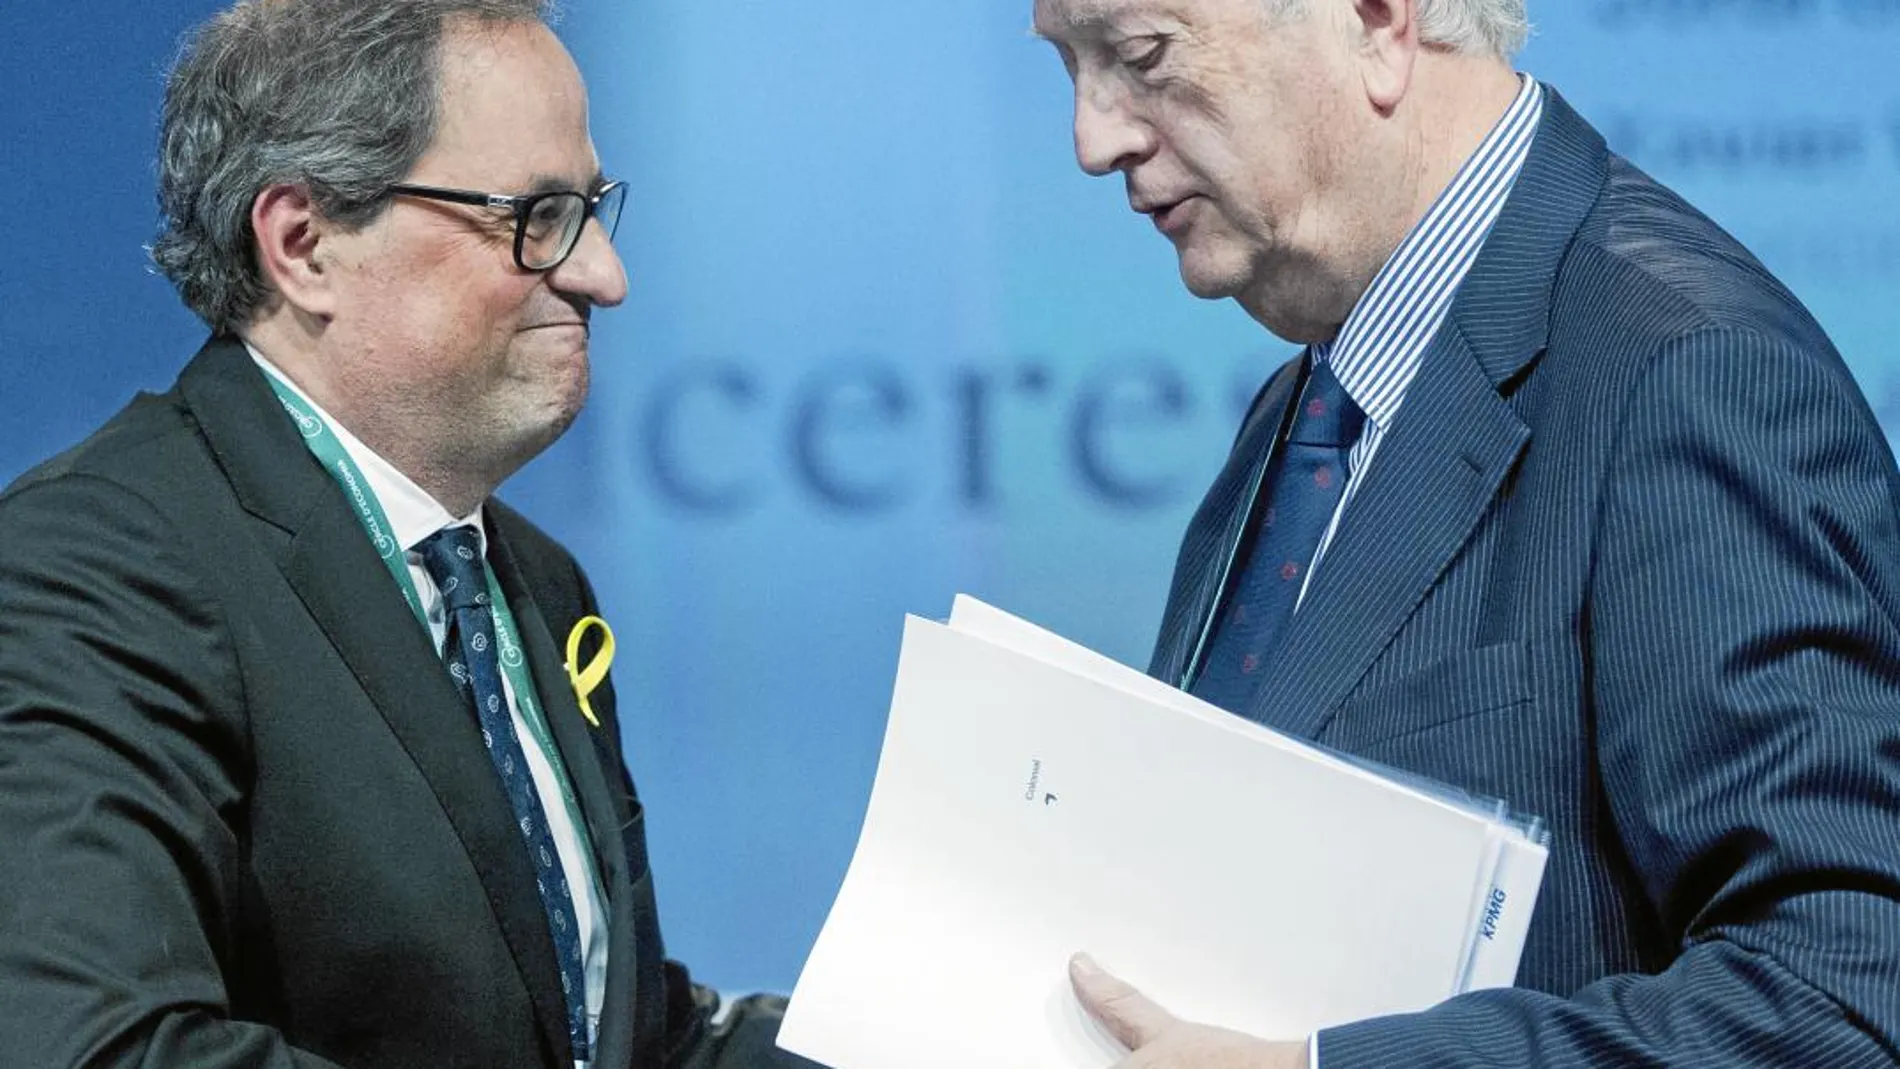 El presidente de la Generalitat, Quim Torra, junto al presidente del Círculo de Economía, Juan José Brugera, en la ponencia inaugural que tuvo lugar el pasado jueves